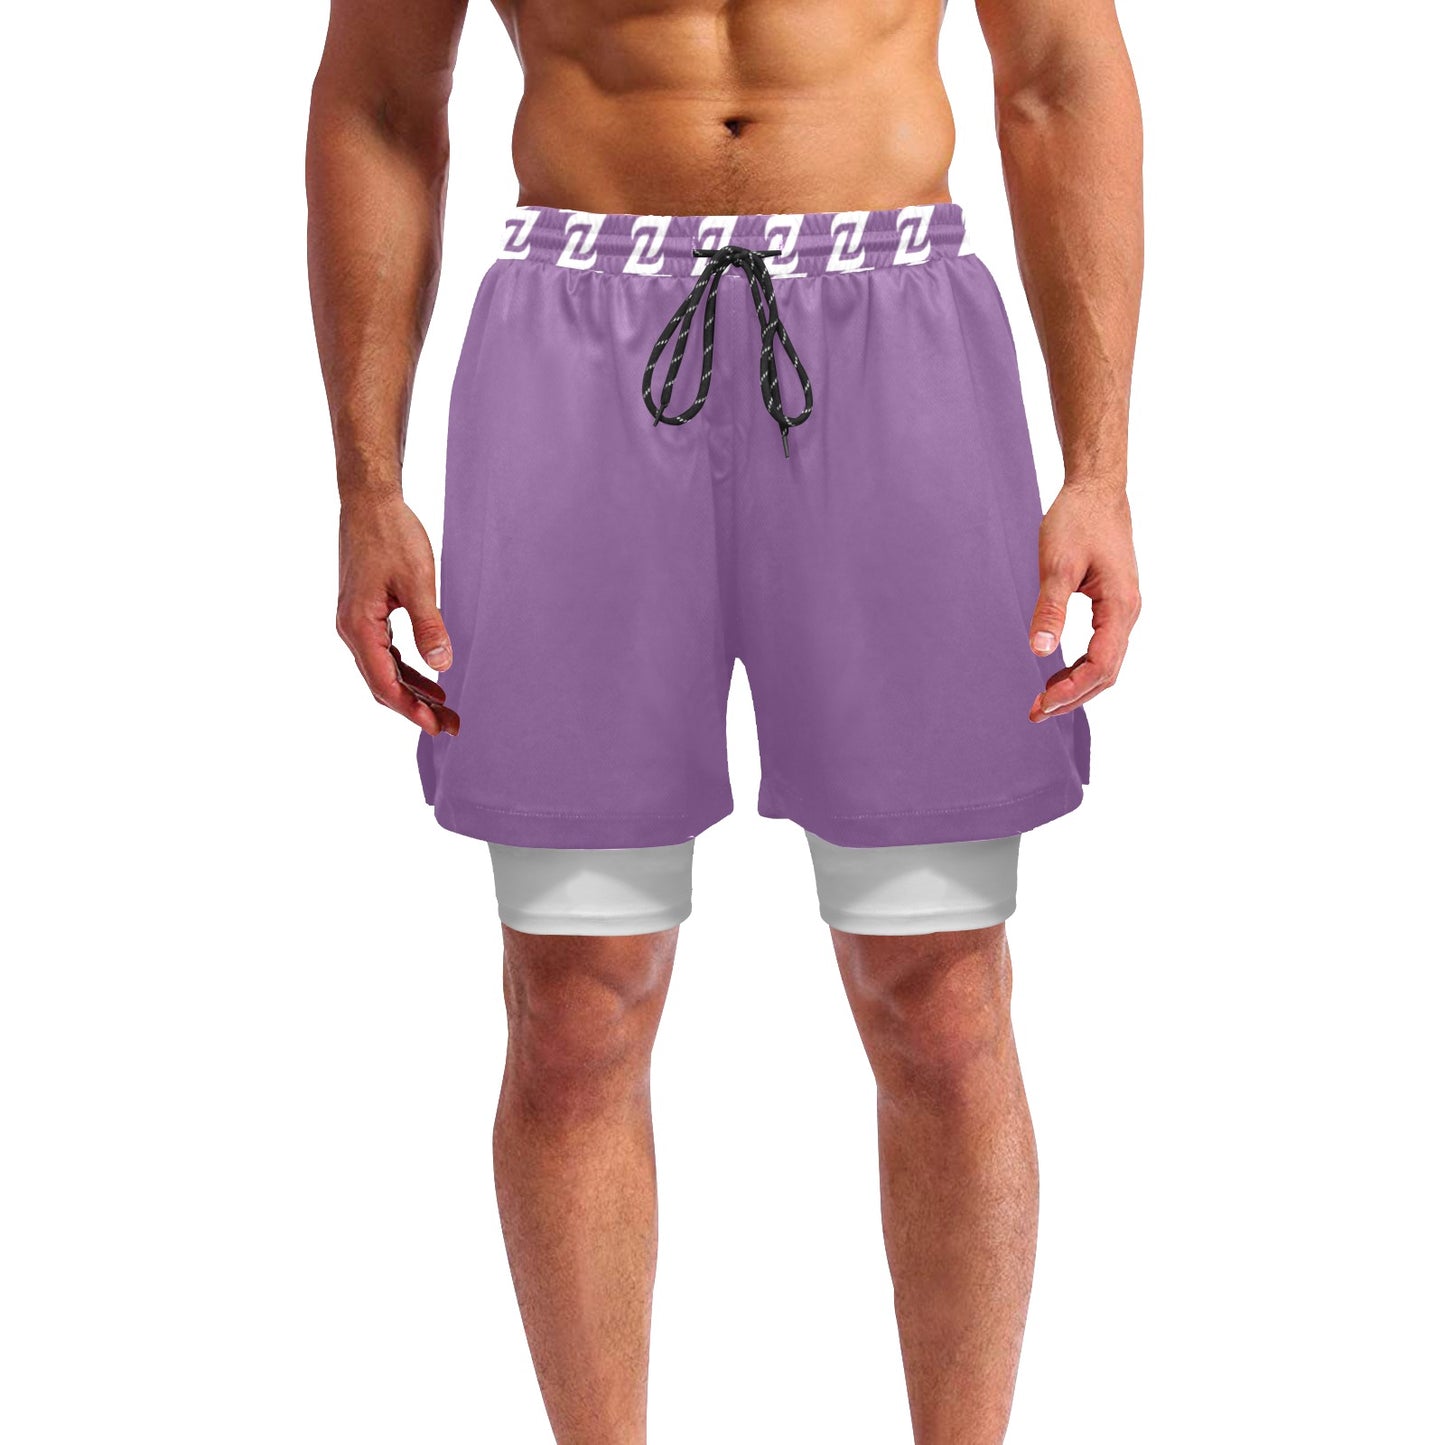 Zen Shorts with Liner - Lavender